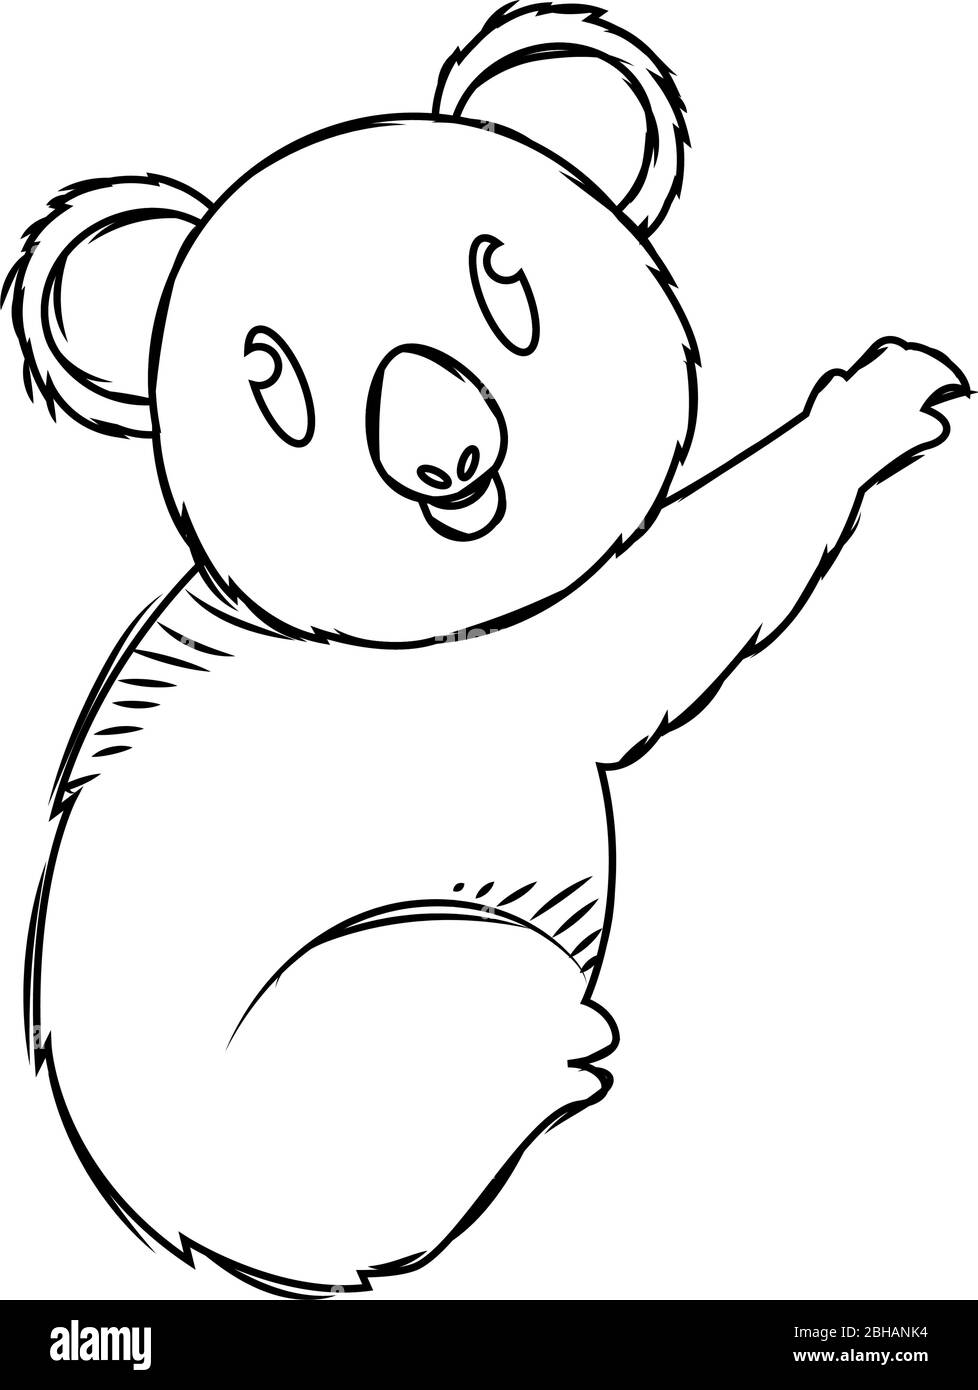 How to Draw a Koala Easy StepByStep Koala Drawing  Artezacom